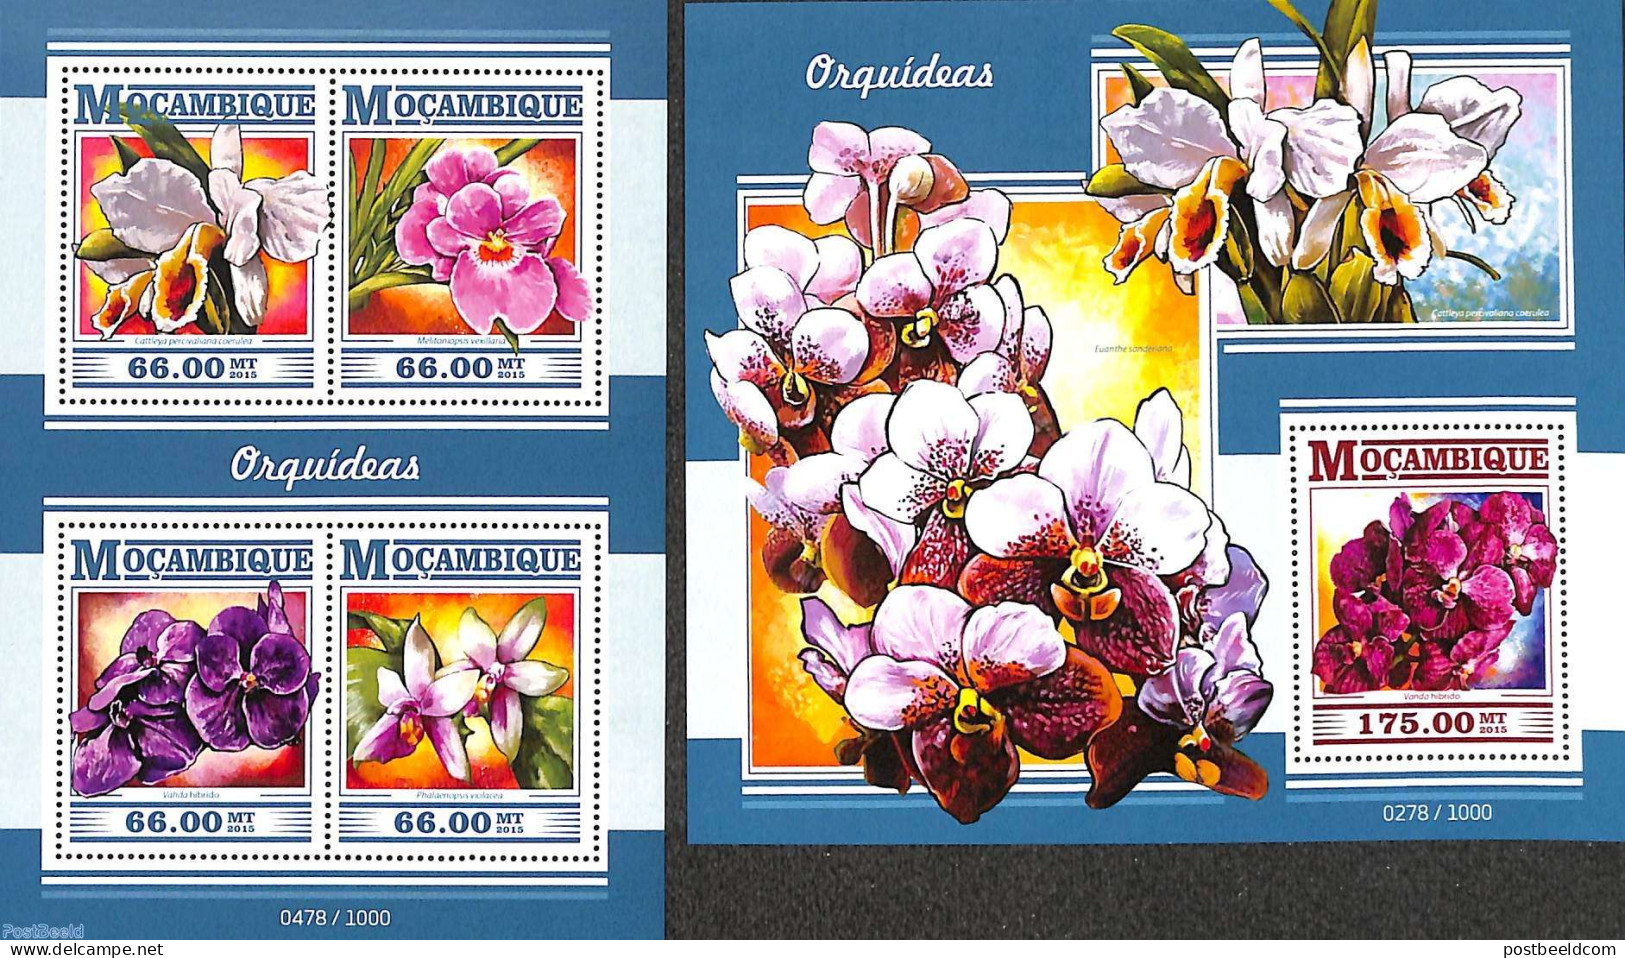 Mozambique 2015 Orchids 2 S/s, Mint NH, Nature - Flowers & Plants - Orchids - Mozambique